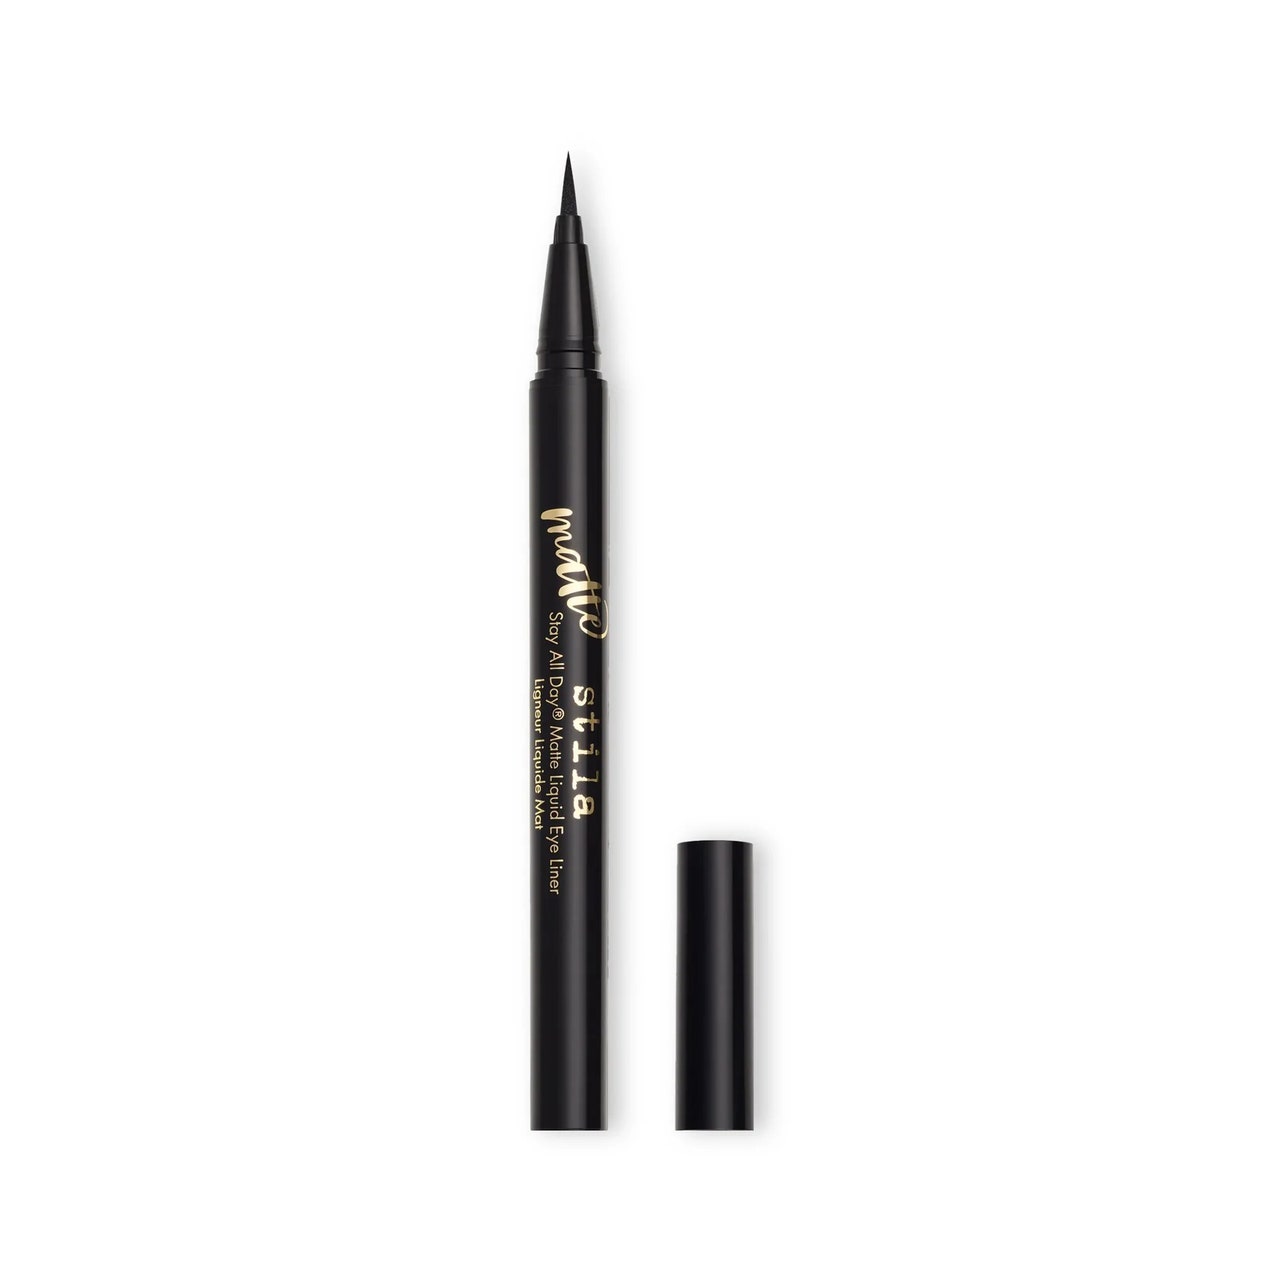 Stila Cosmetics Stay All Day Matte Liquid Eyeliner schwarzer flüssiger Eyeliner-Stift mit seitlicher Kappe auf weißem Hintergrund